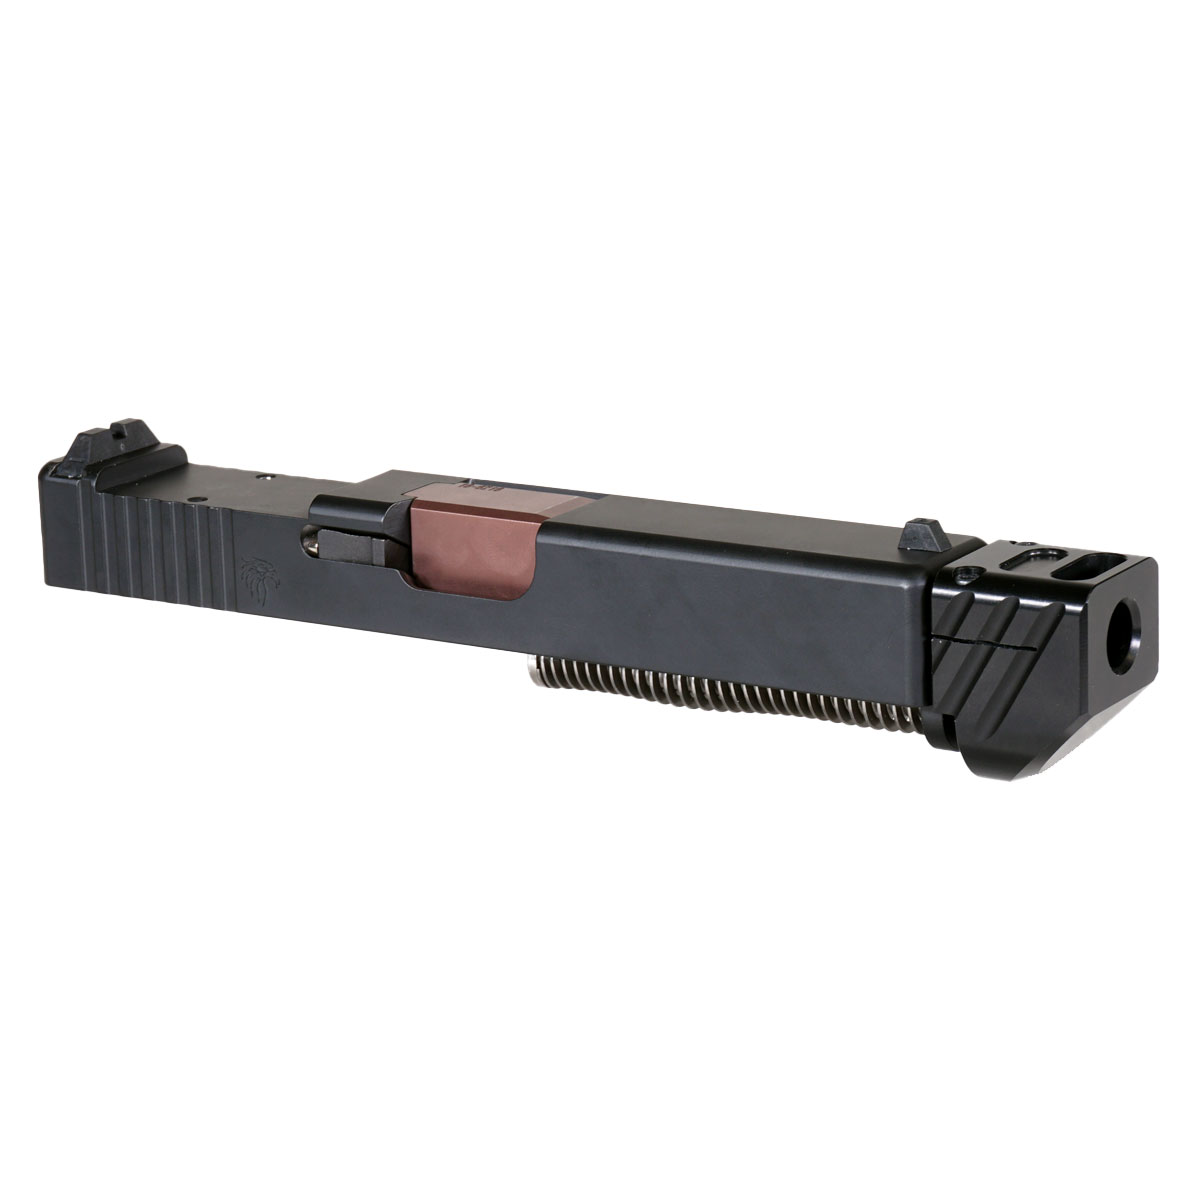 DTT 'Blockbuster V4 w/ Black Compensator' 9mm Complete Slide Kit - Glock 19 Gen 1-3 Compatible